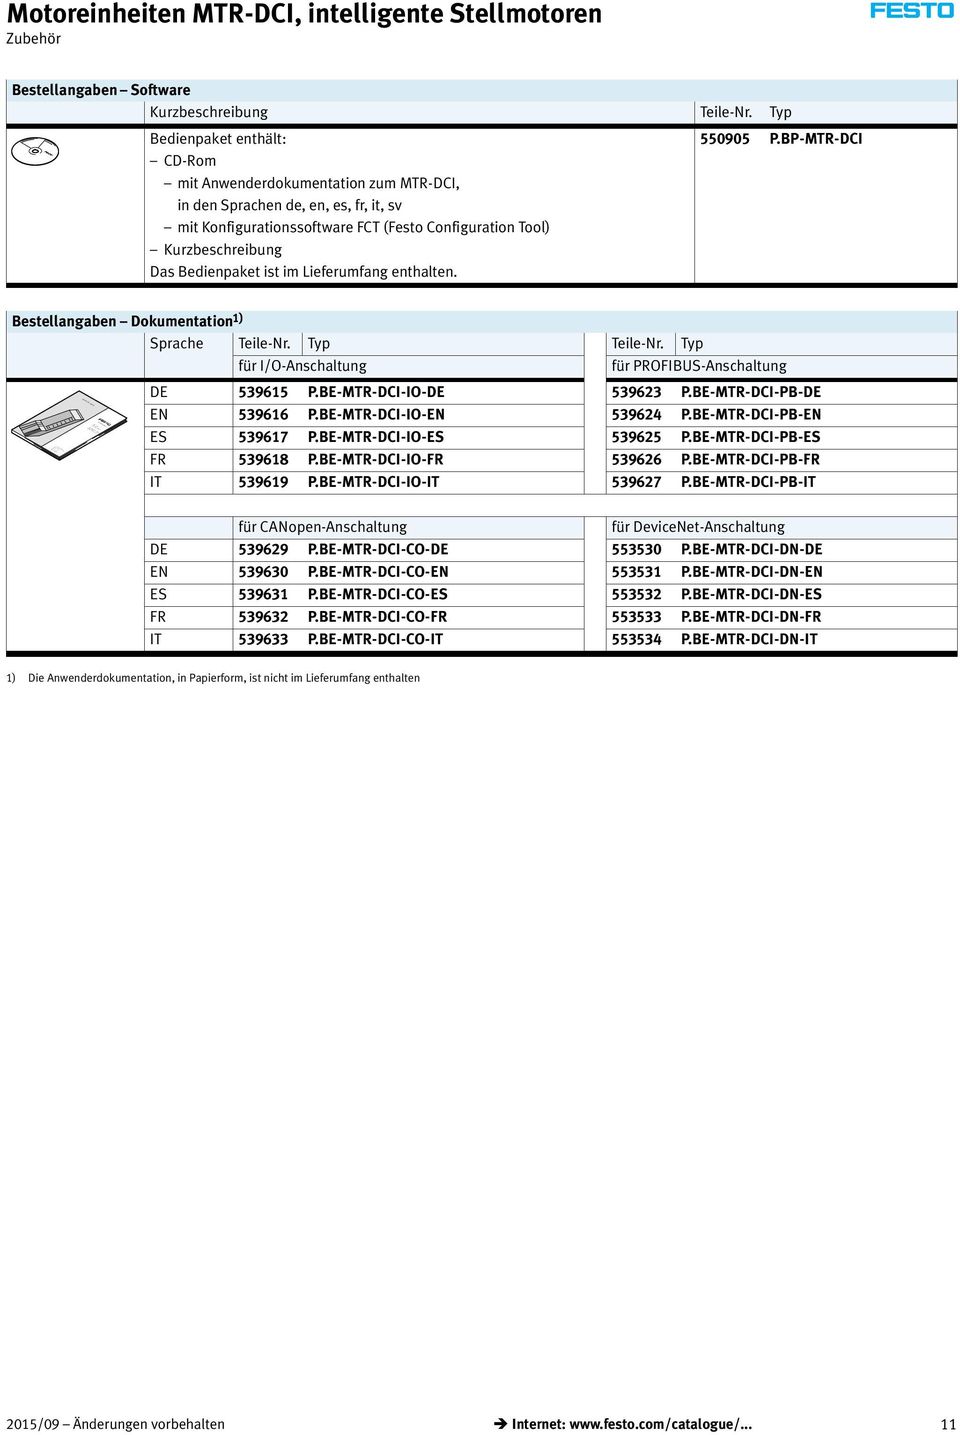 Bedienpaket ist im Lieferumfang enthalten. 550905 P.BP-MTR-DCI Bestellangaben Dokumentation 1) Sprache Teile-Nr. Typ Teile-Nr. Typ für I/O-Anschaltung für PROFIBUS-Anschaltung DE 539615 P.